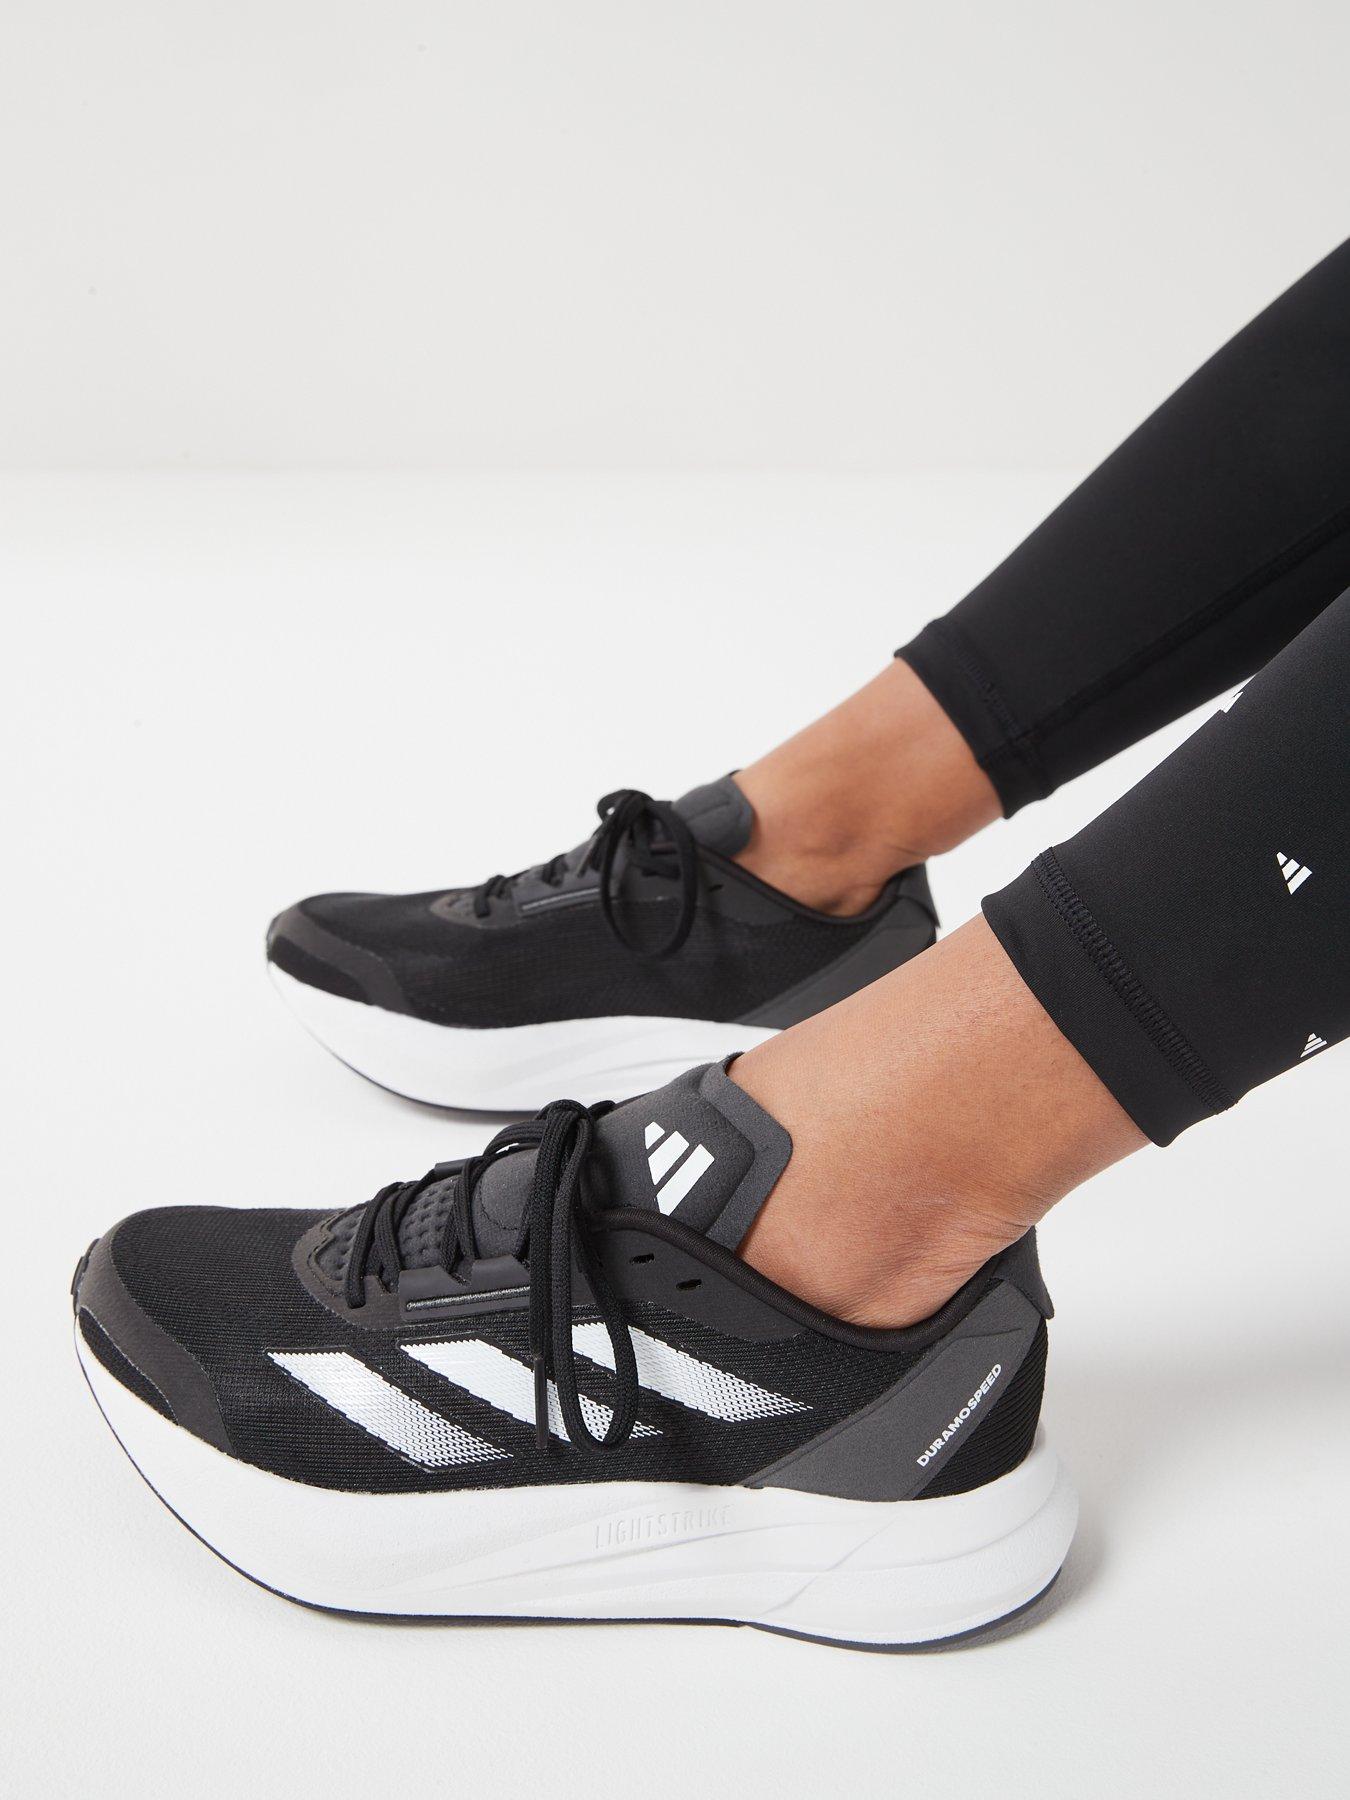 adidas Duramo Speed Running Shoes - Black, Women's Running